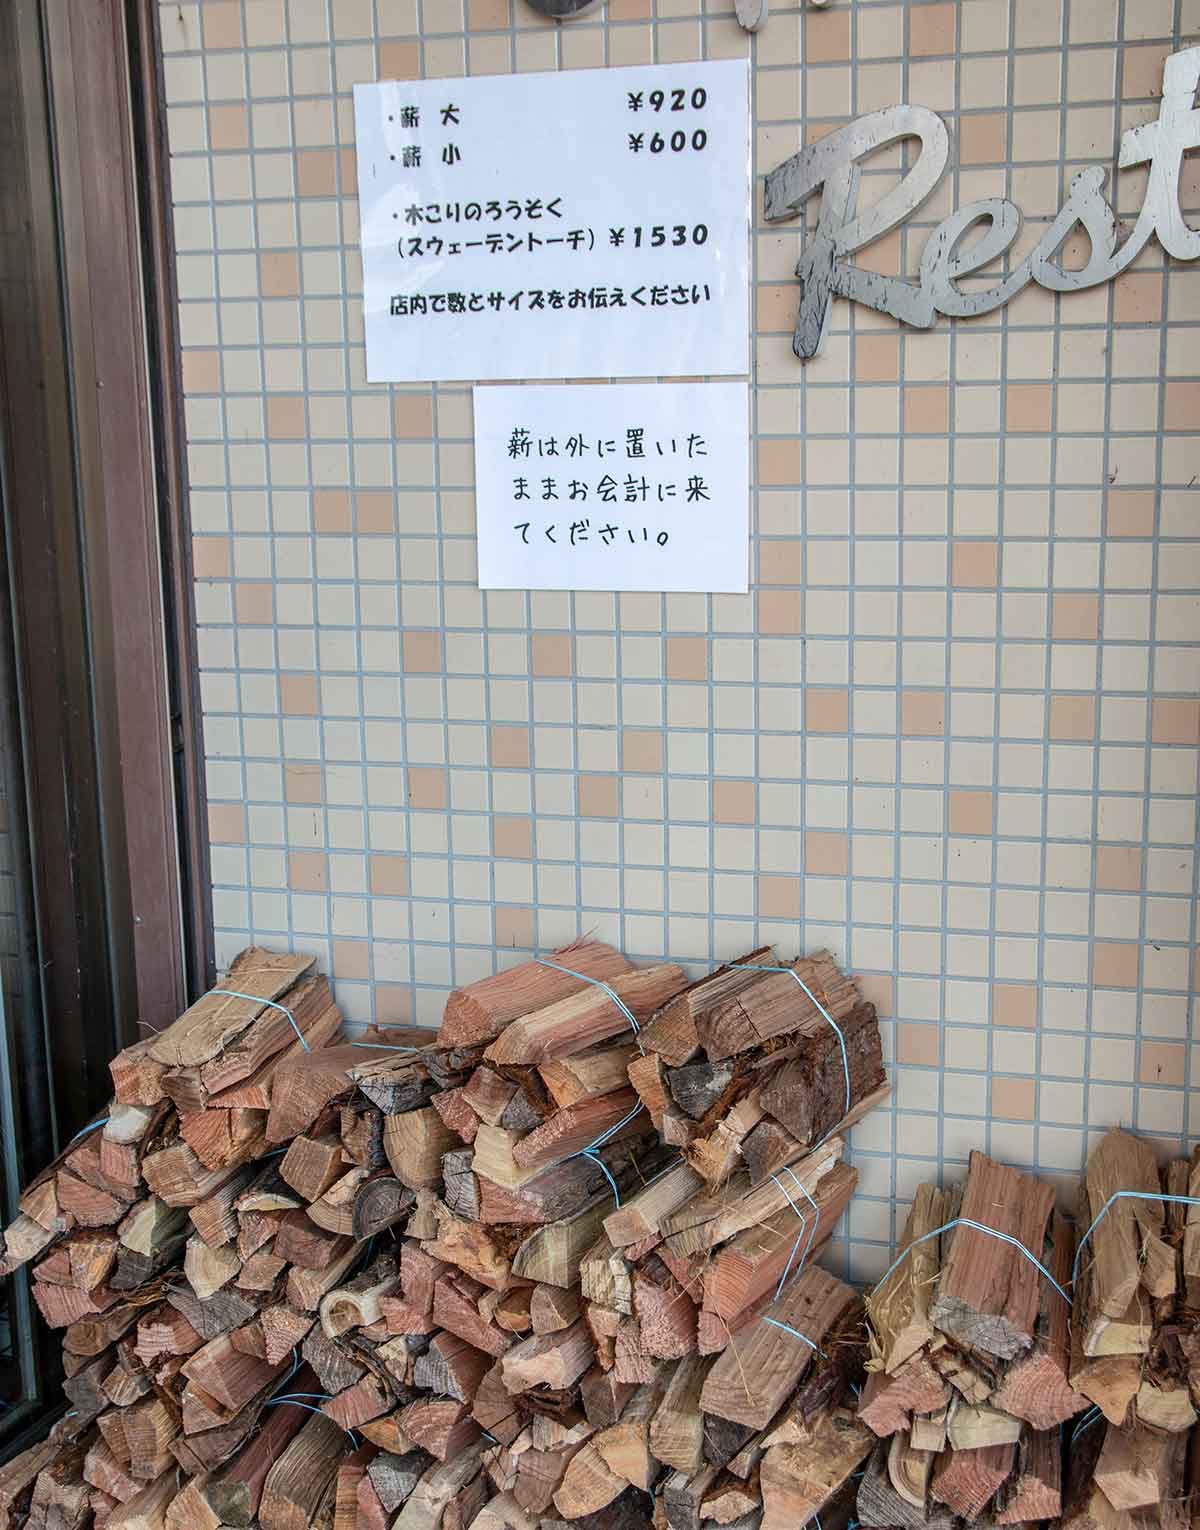 セントラルロッジ浩庵で販売されている薪